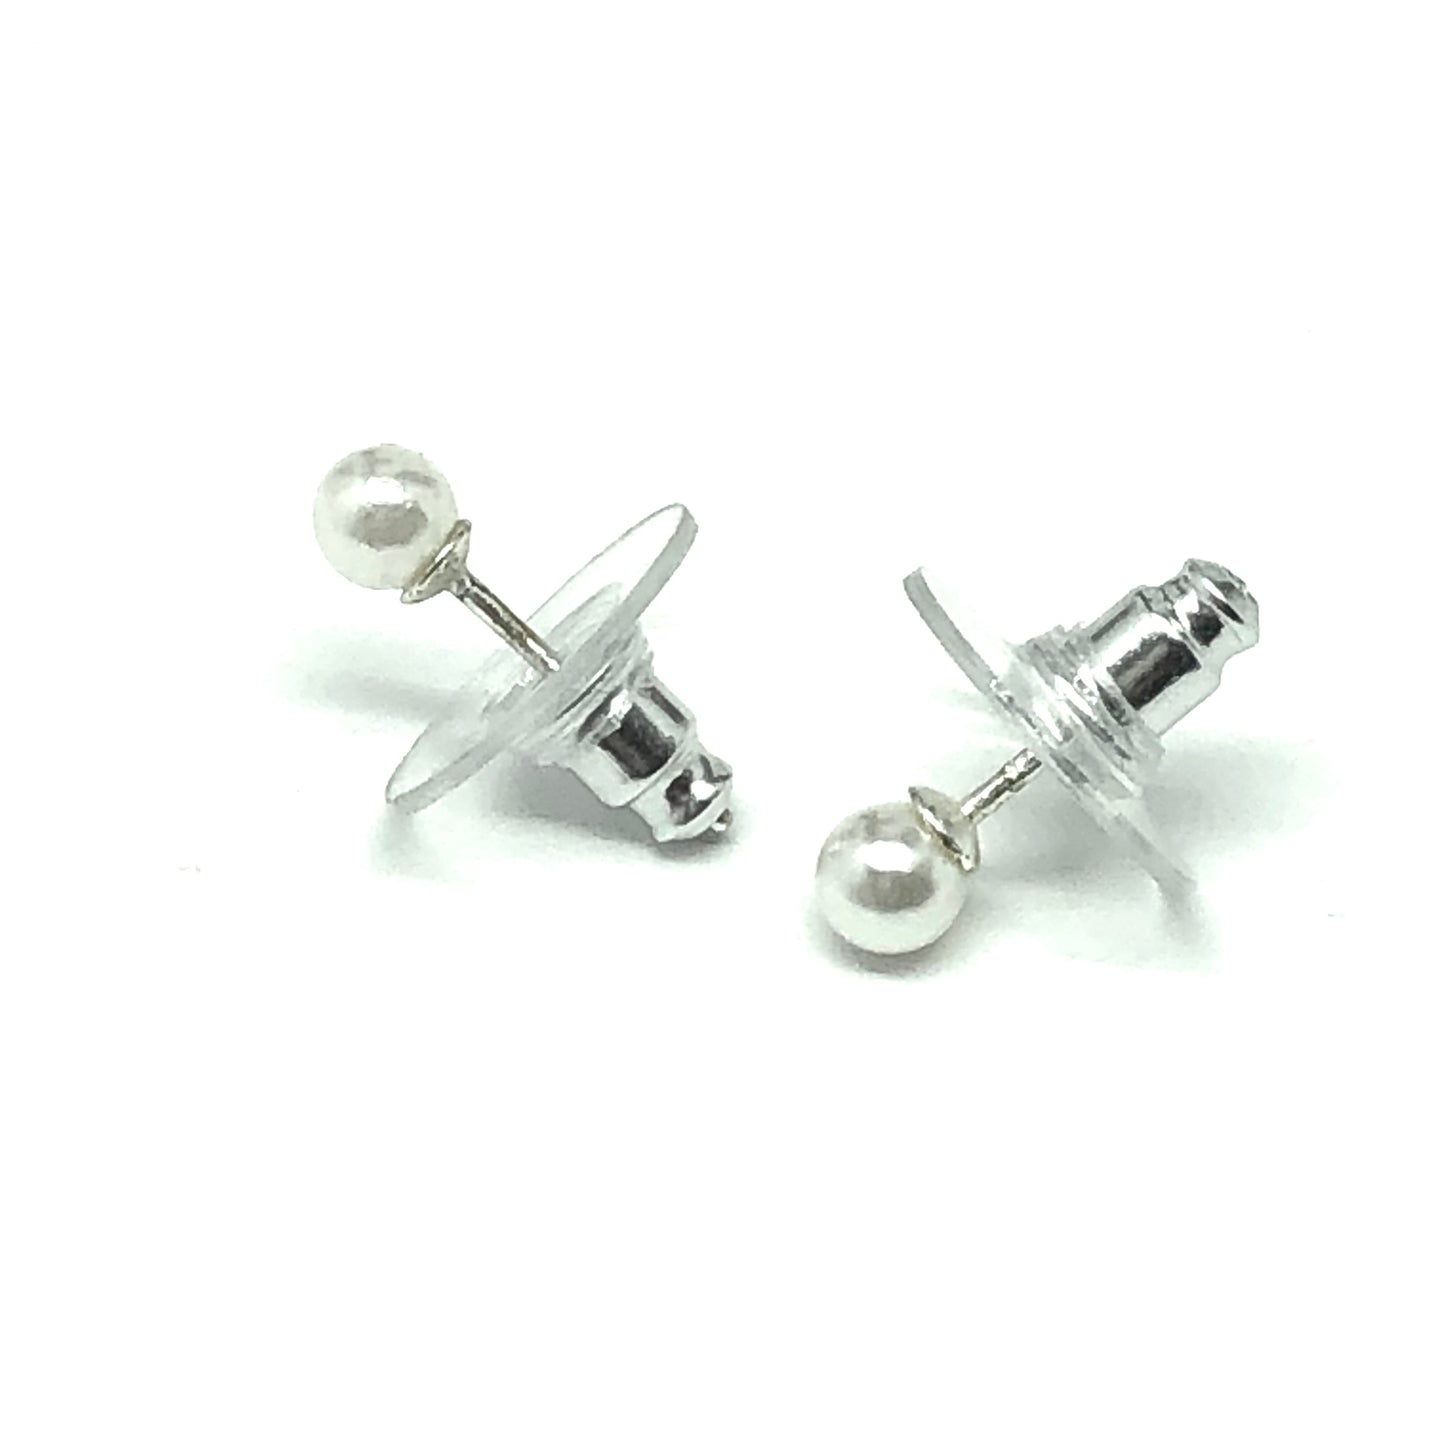 Earrings | Small Sterling Silver 4mm Faux Pearl Stud Earrings | Blingschlingers Jewelry